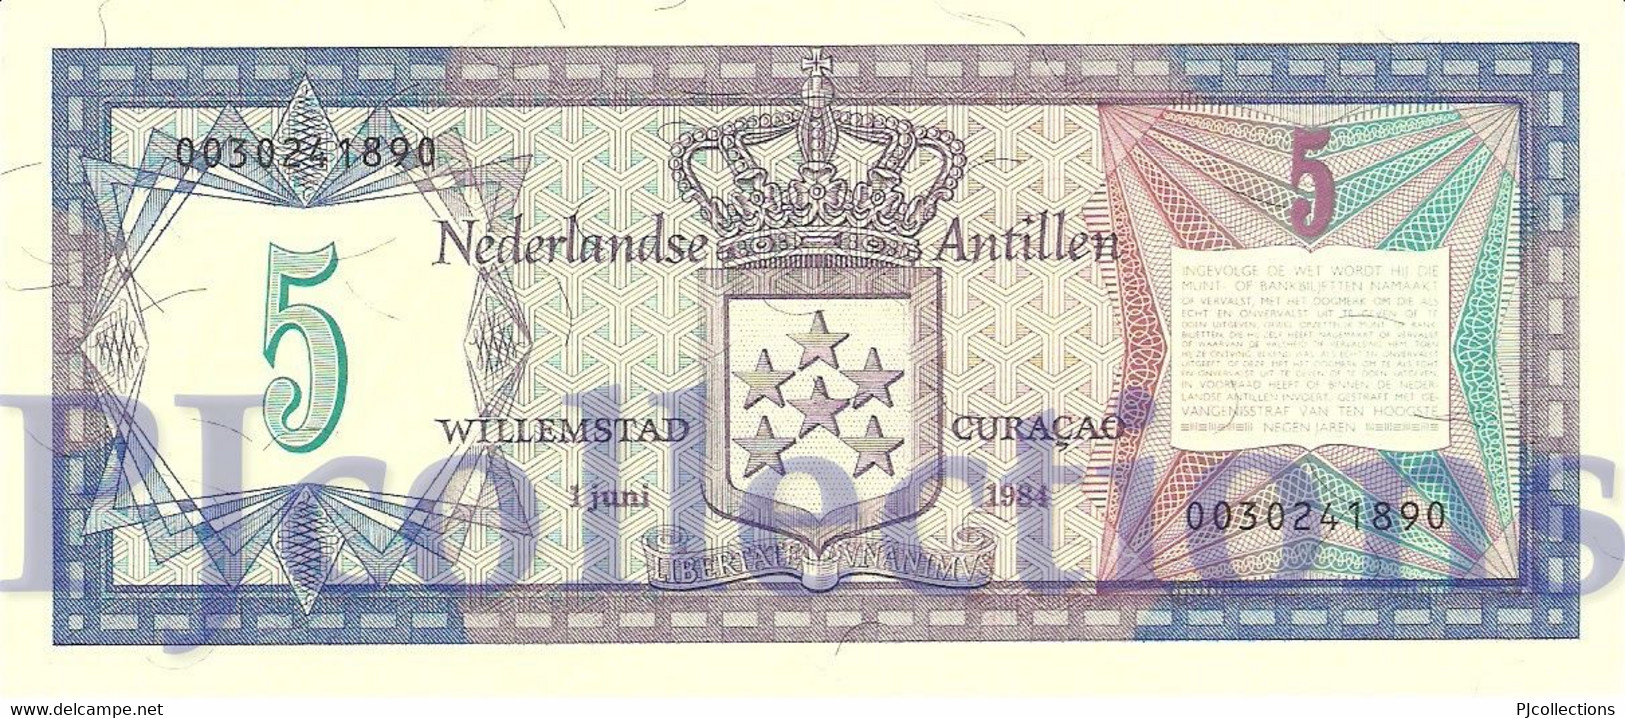 NETHERLANDS ANTILLES 5 GULDEN 1984 PICK 15b UNC - Netherlands Antilles (...-1986)